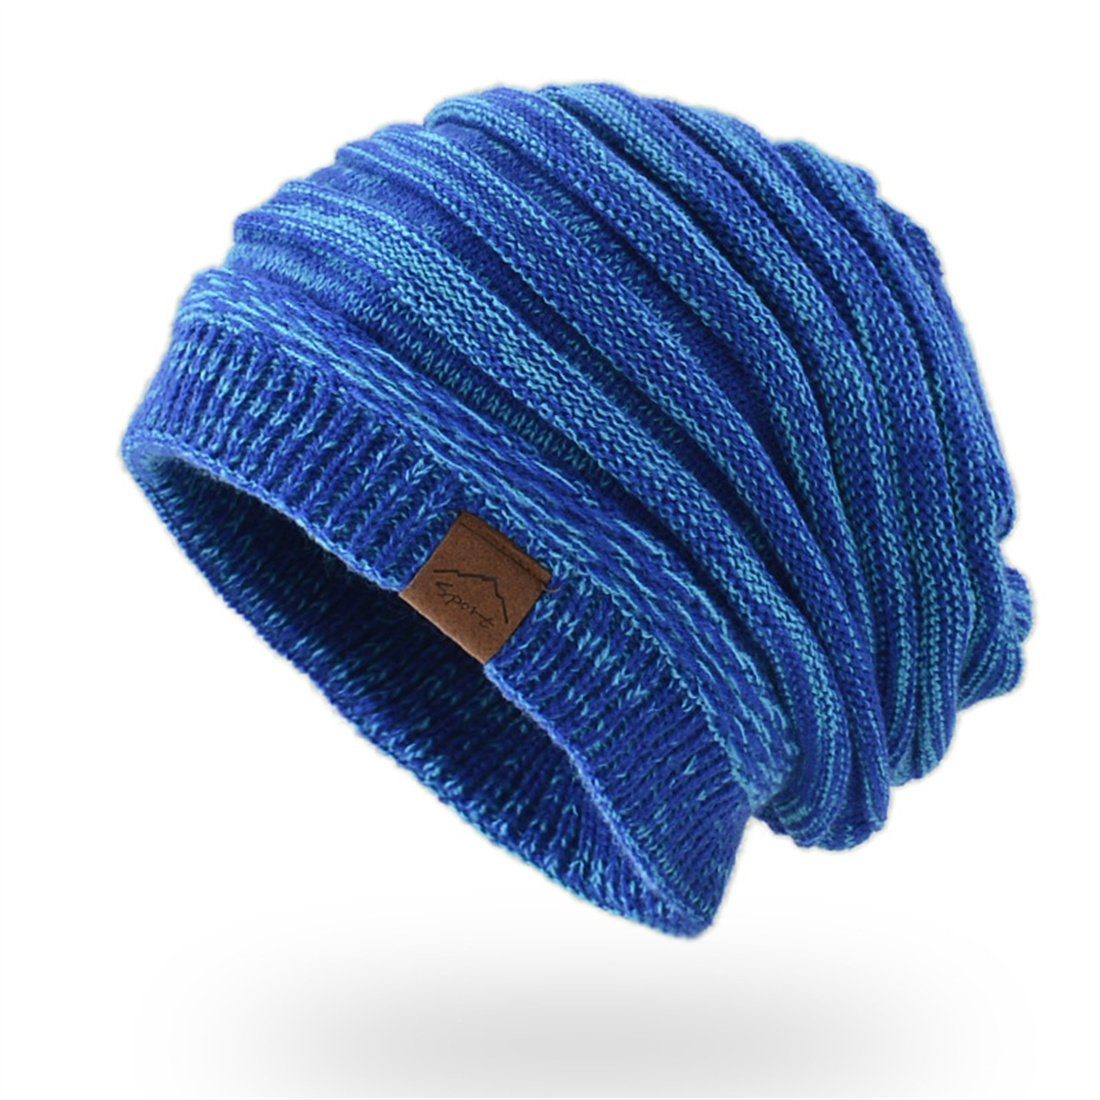 DÖRÖY Strickmütze Unisex Winter warme Strickmütze, retro verdickte warme Wollmütze blau | Strickmützen